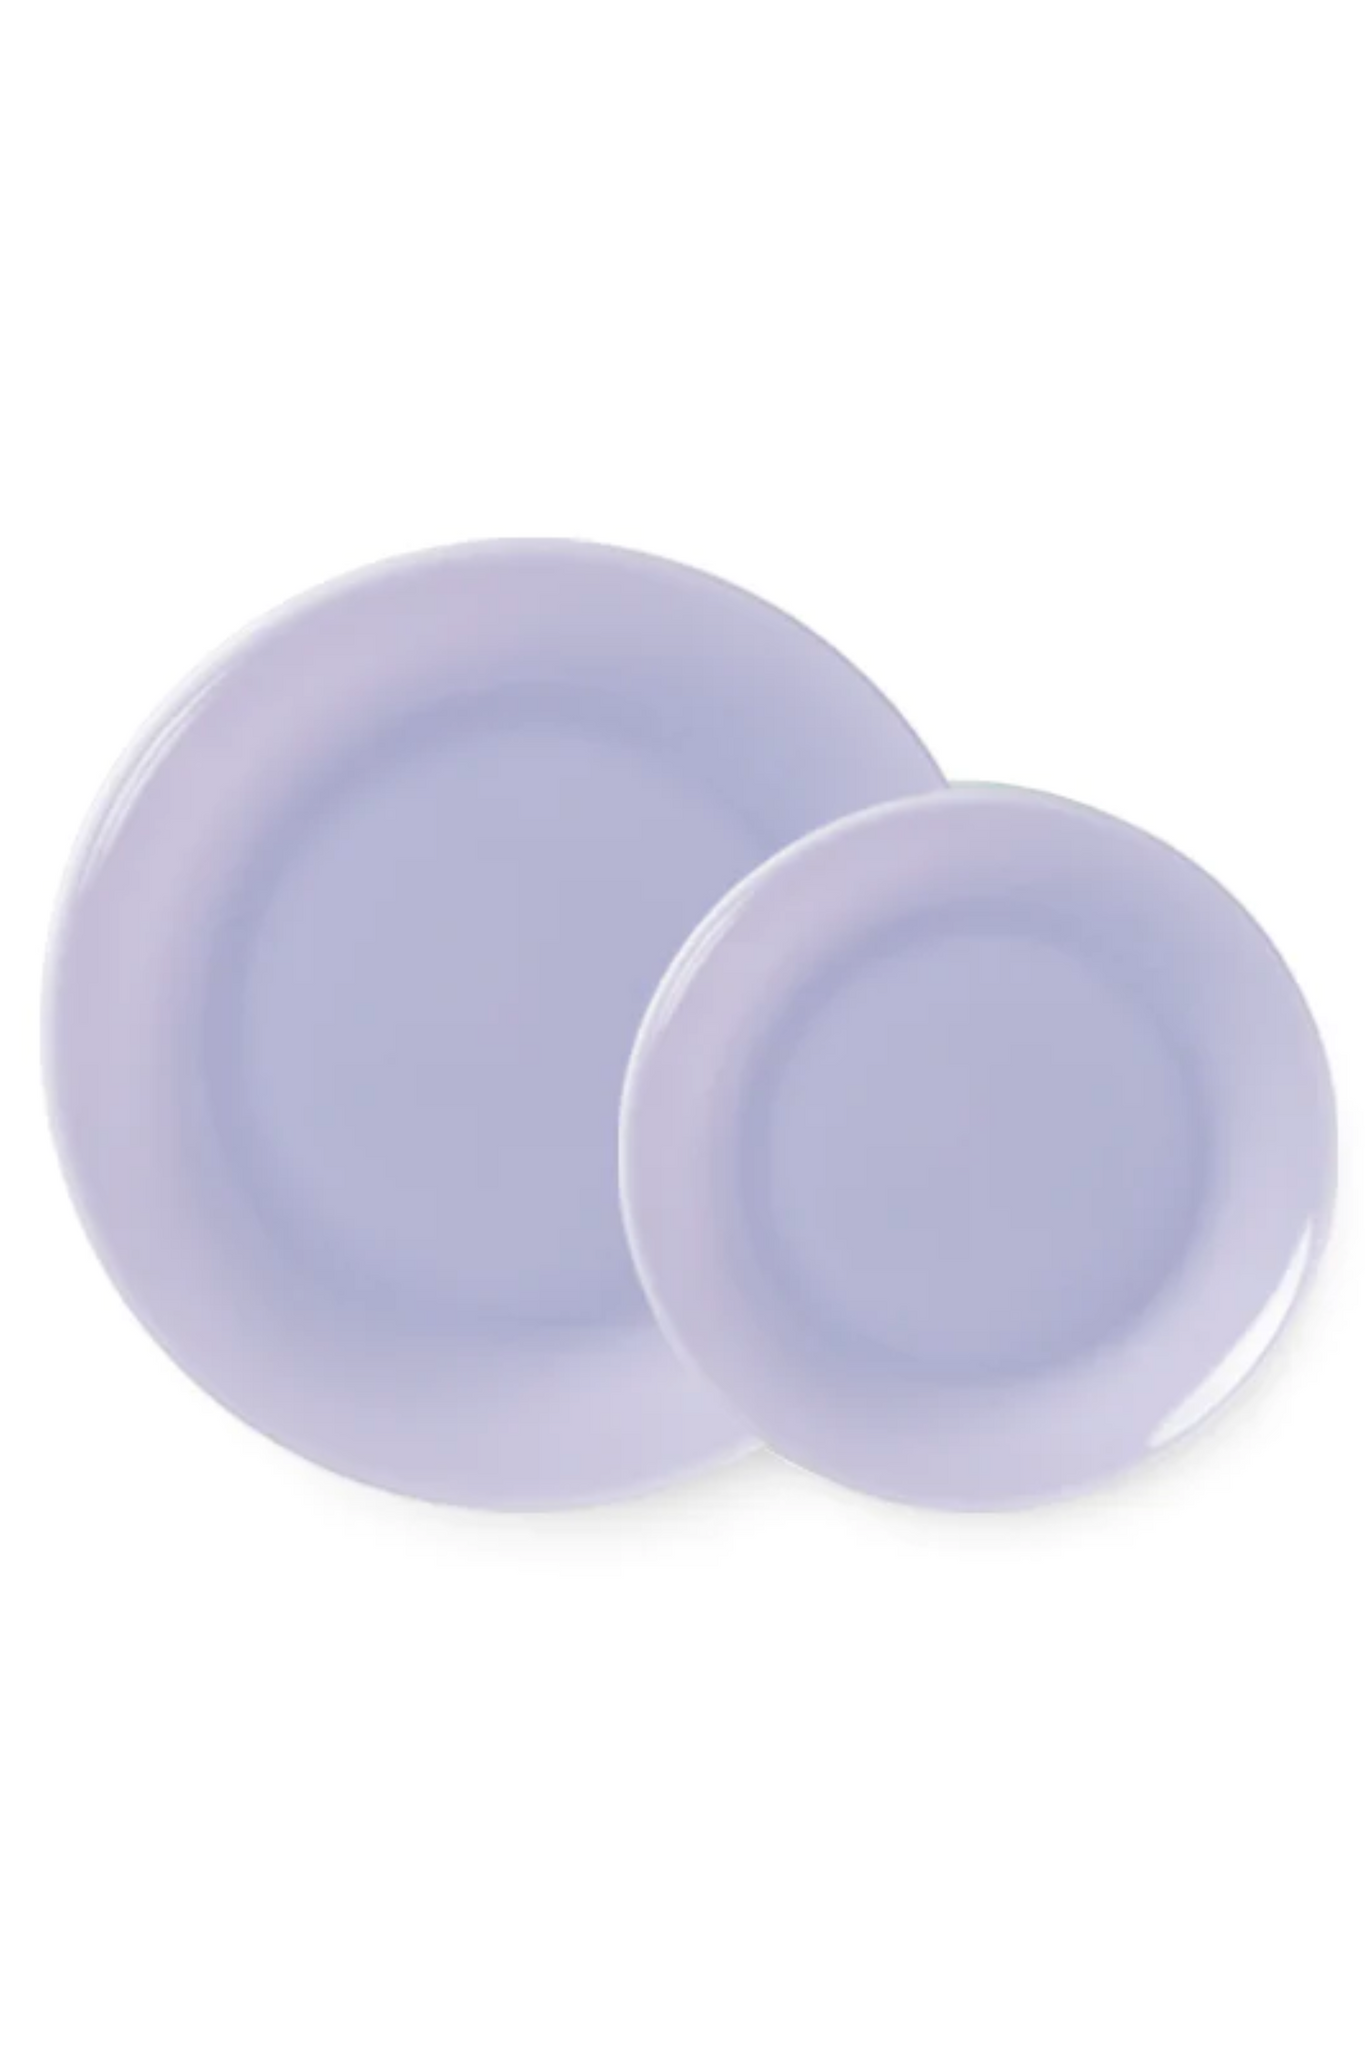 Lucie Kaas MILK - Dinner Plate, Lavender